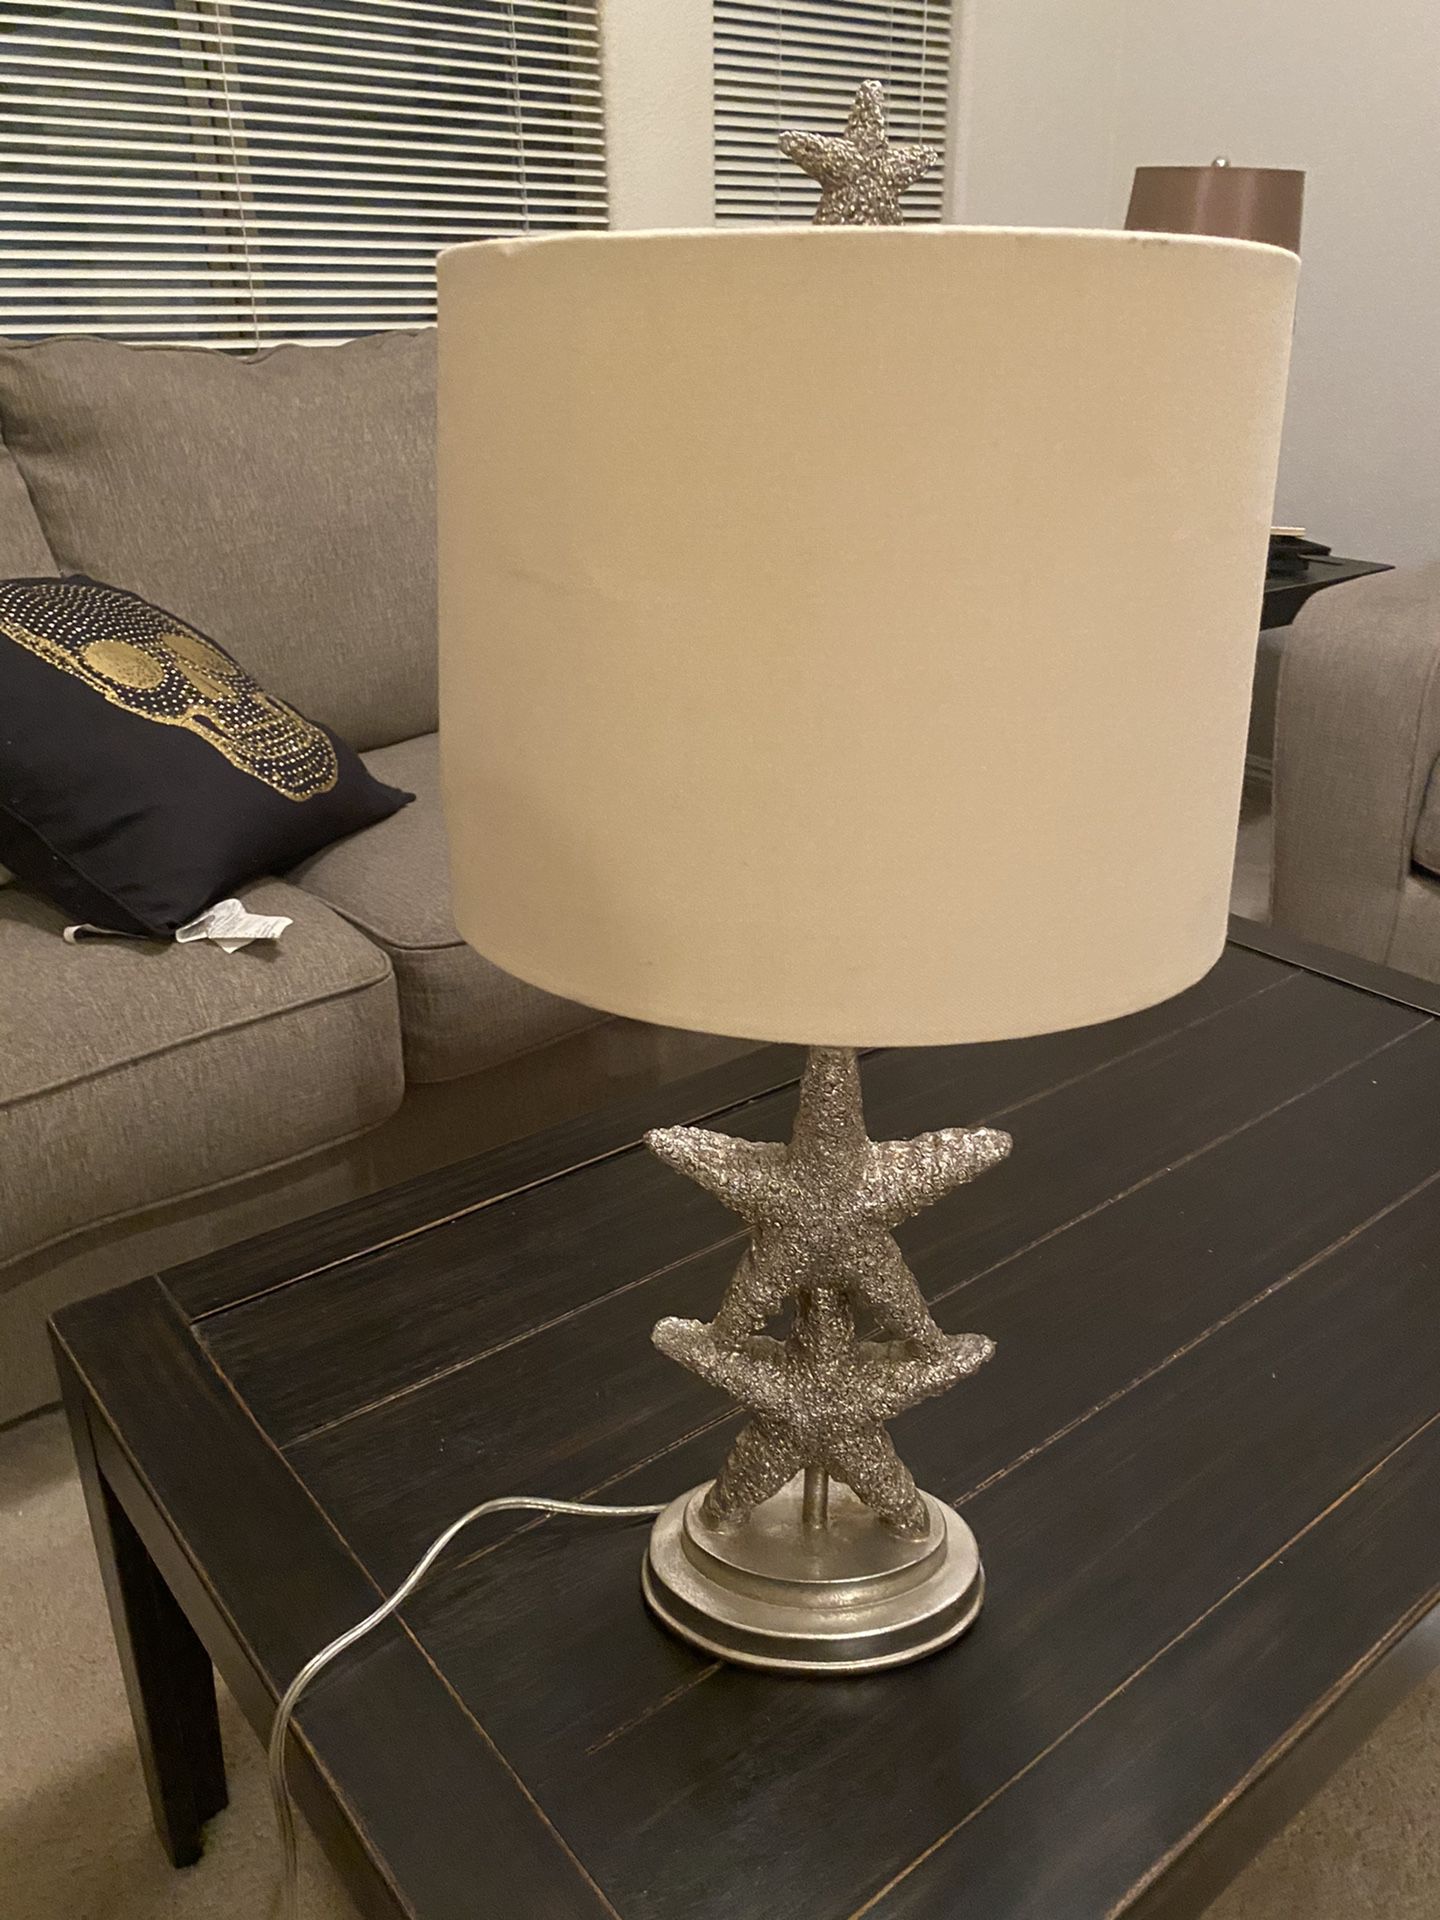 Antique metallic starfish lamp